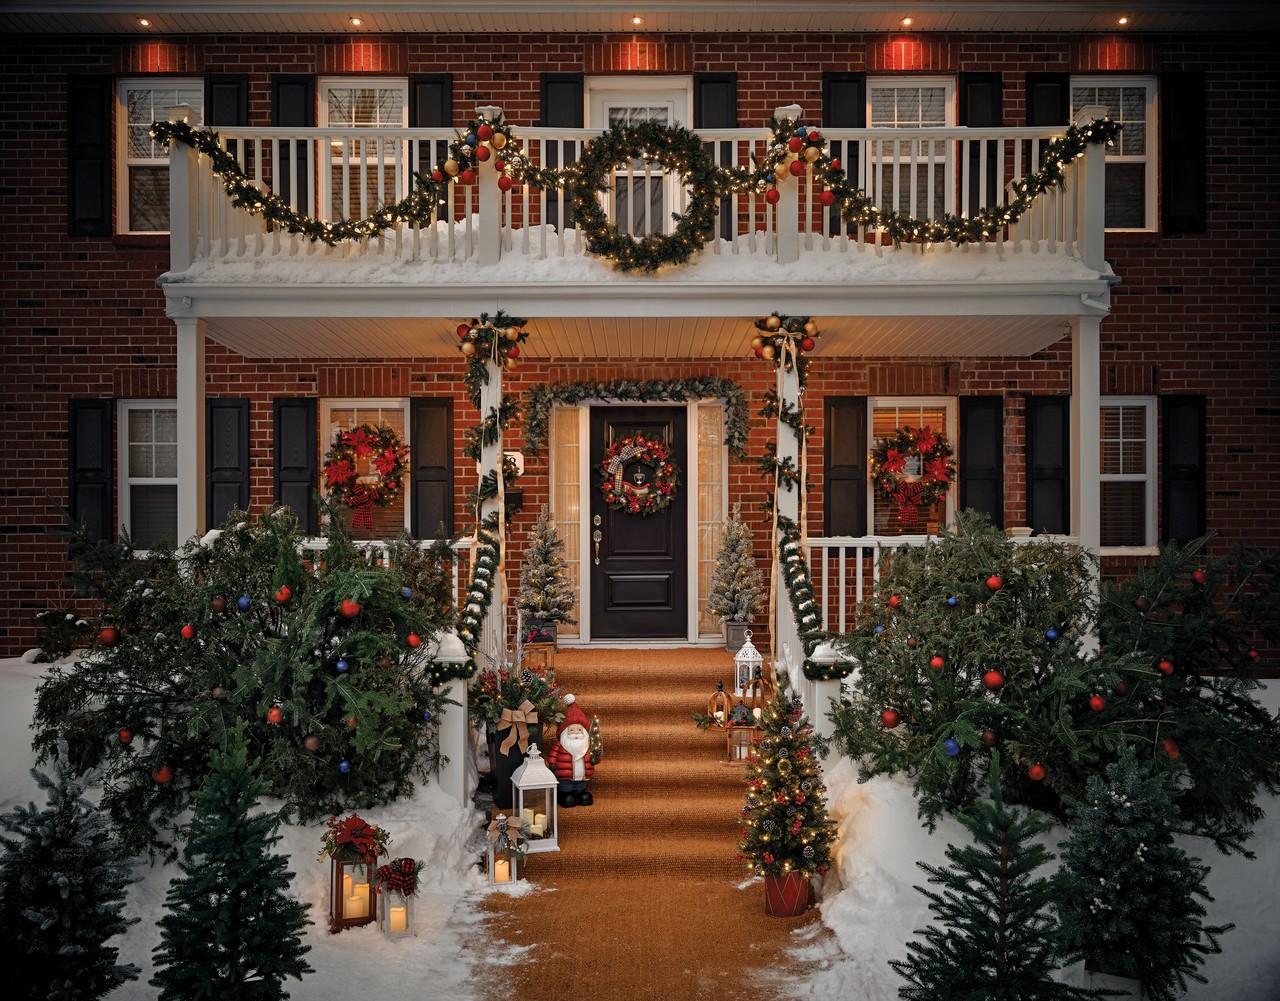 décoration de noël extérieur pots décoratifs #Noël #christmasdecor